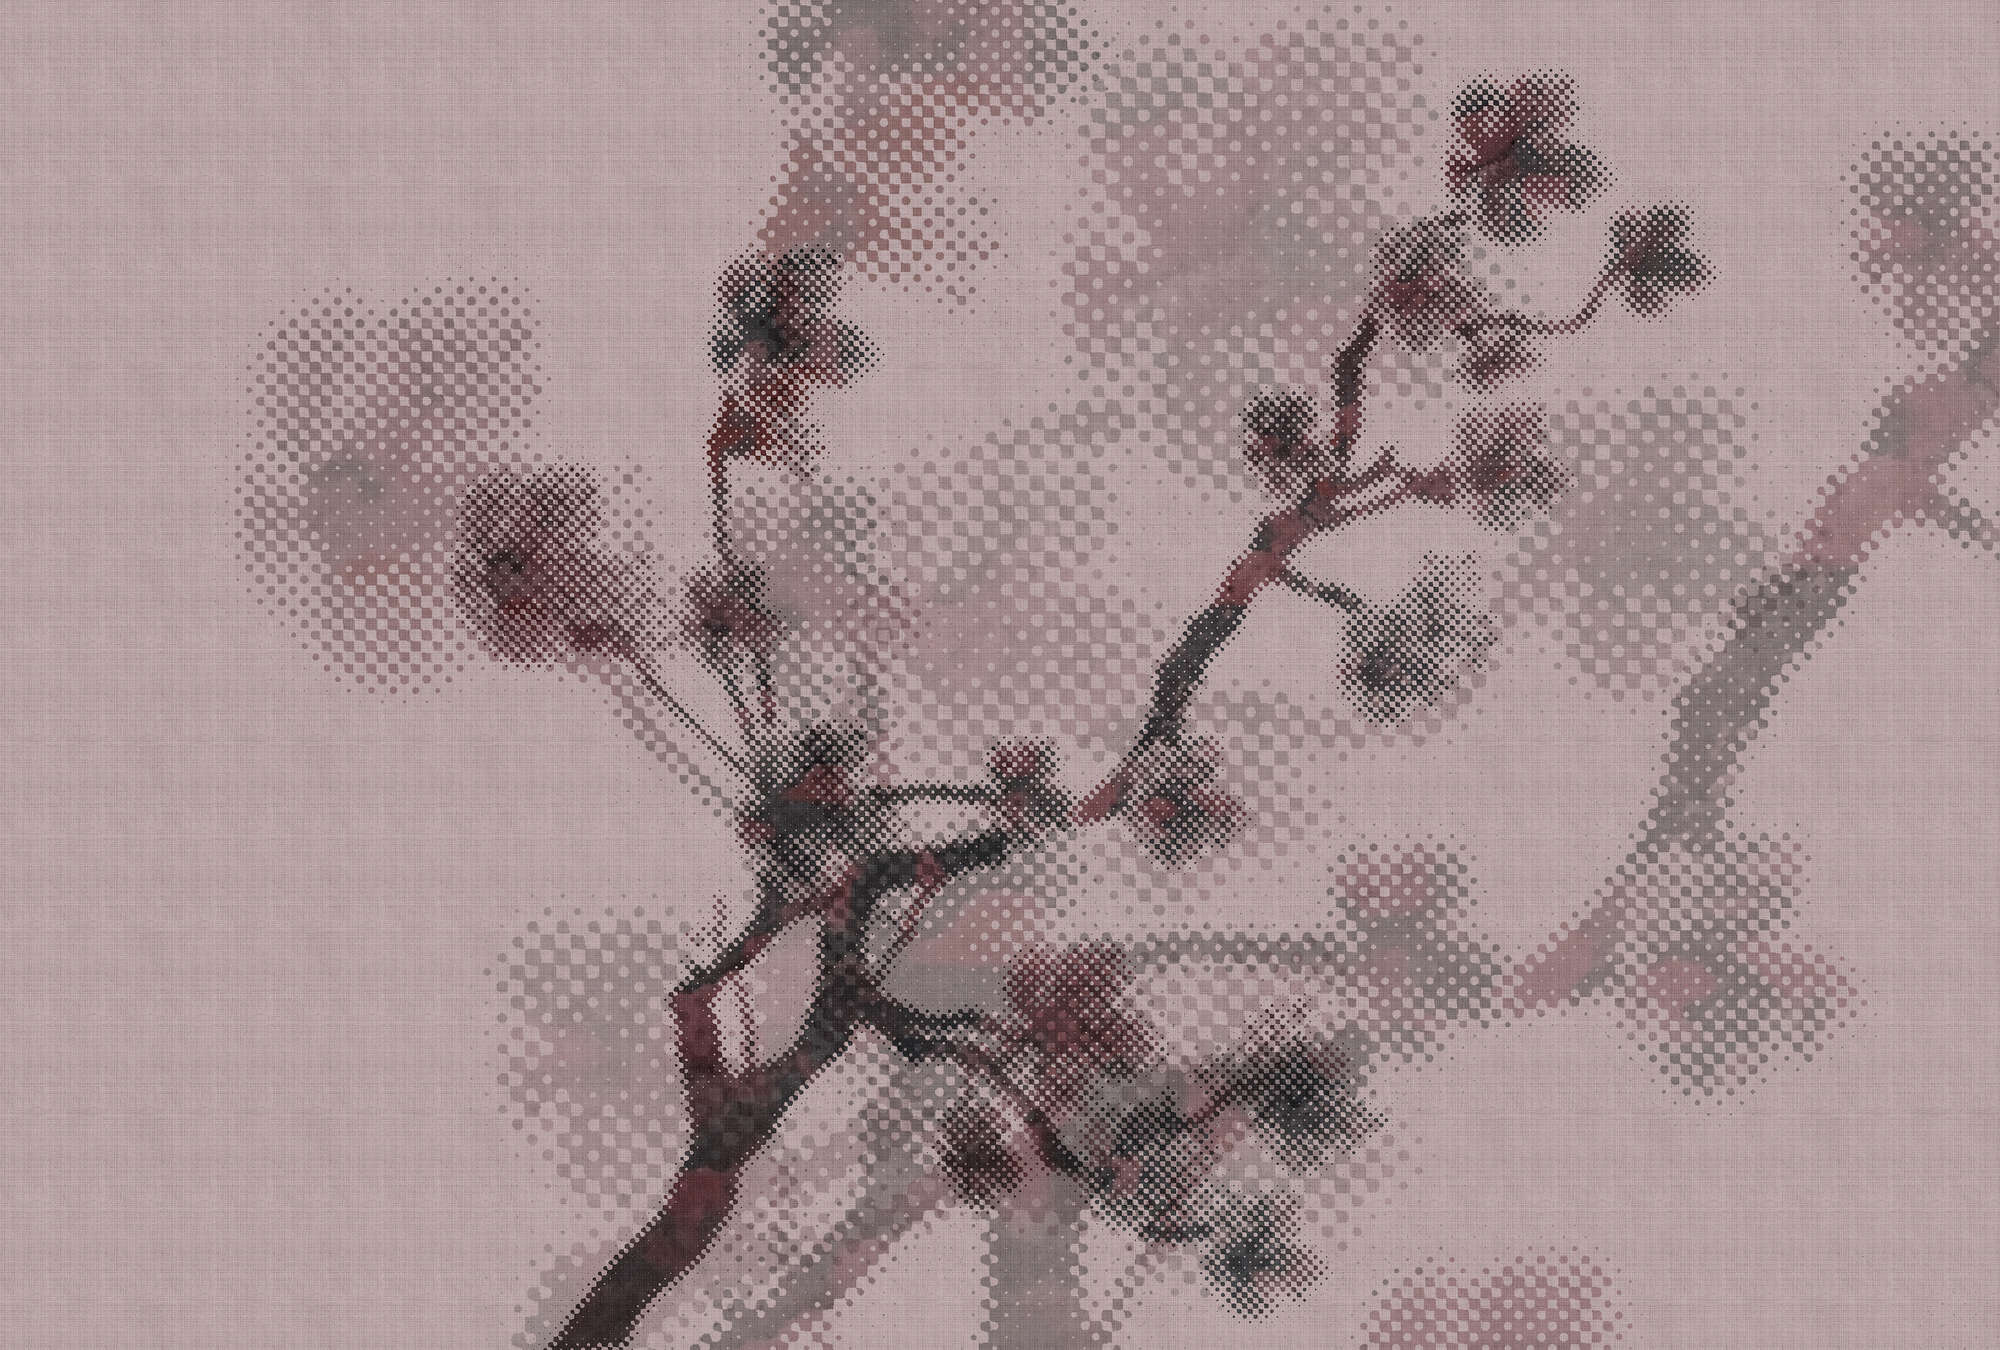             Twigs 3 - Onderlaag behang met natuurmotief & pixeldessin - natuurlijke linnenstructuur - roze | parelmoer glad vlies
        